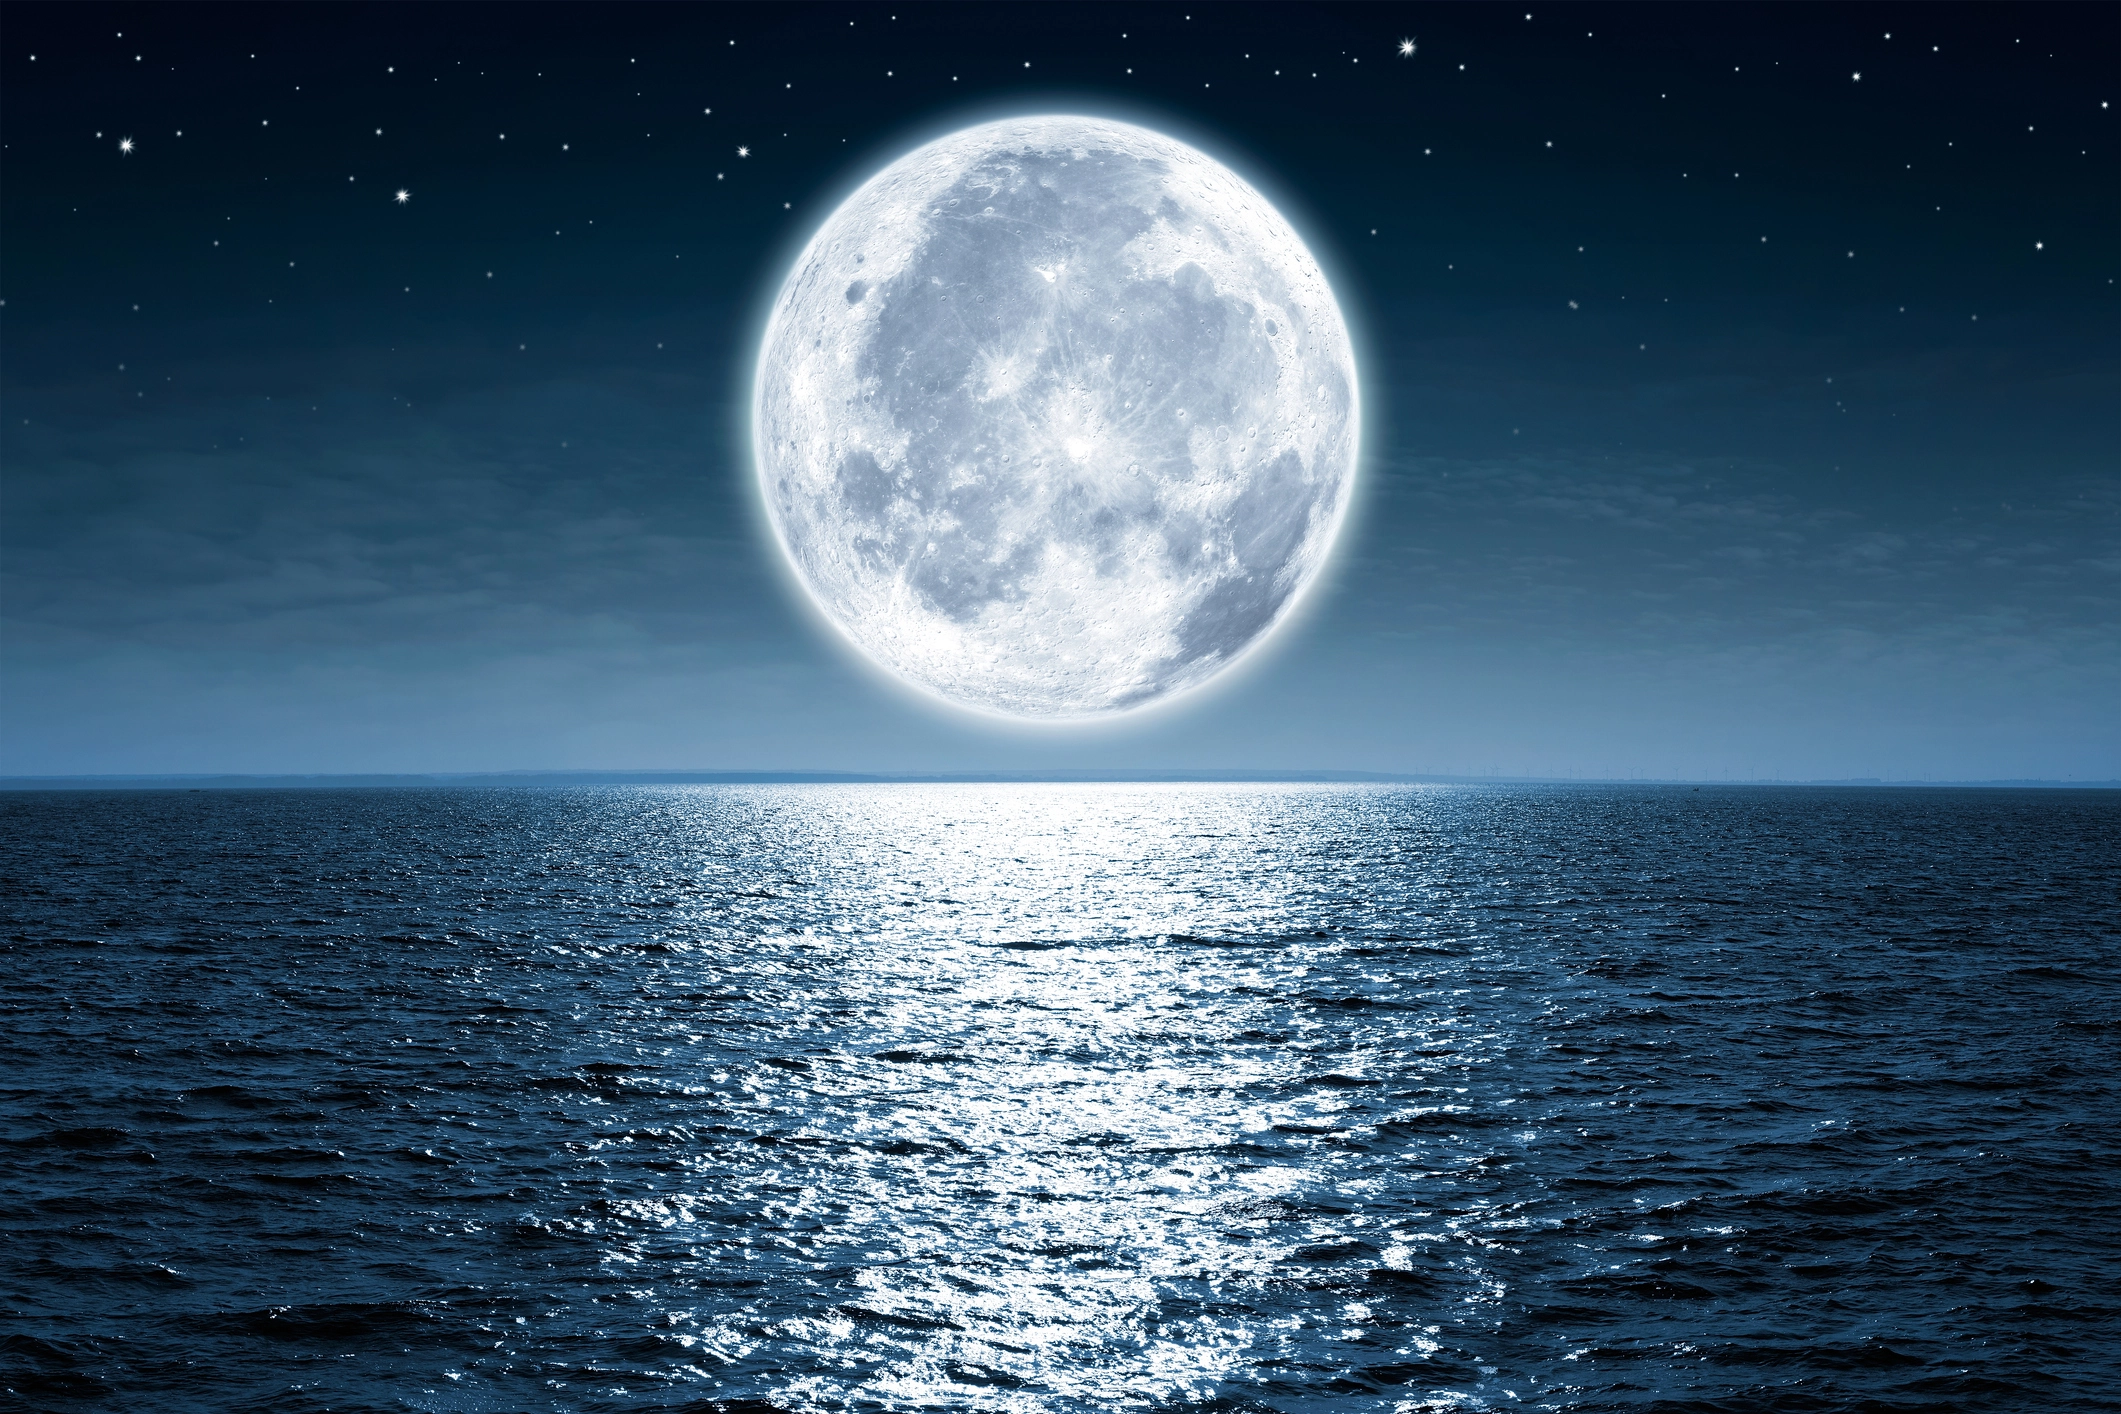  القمر في المنام - تفسير الاحلام